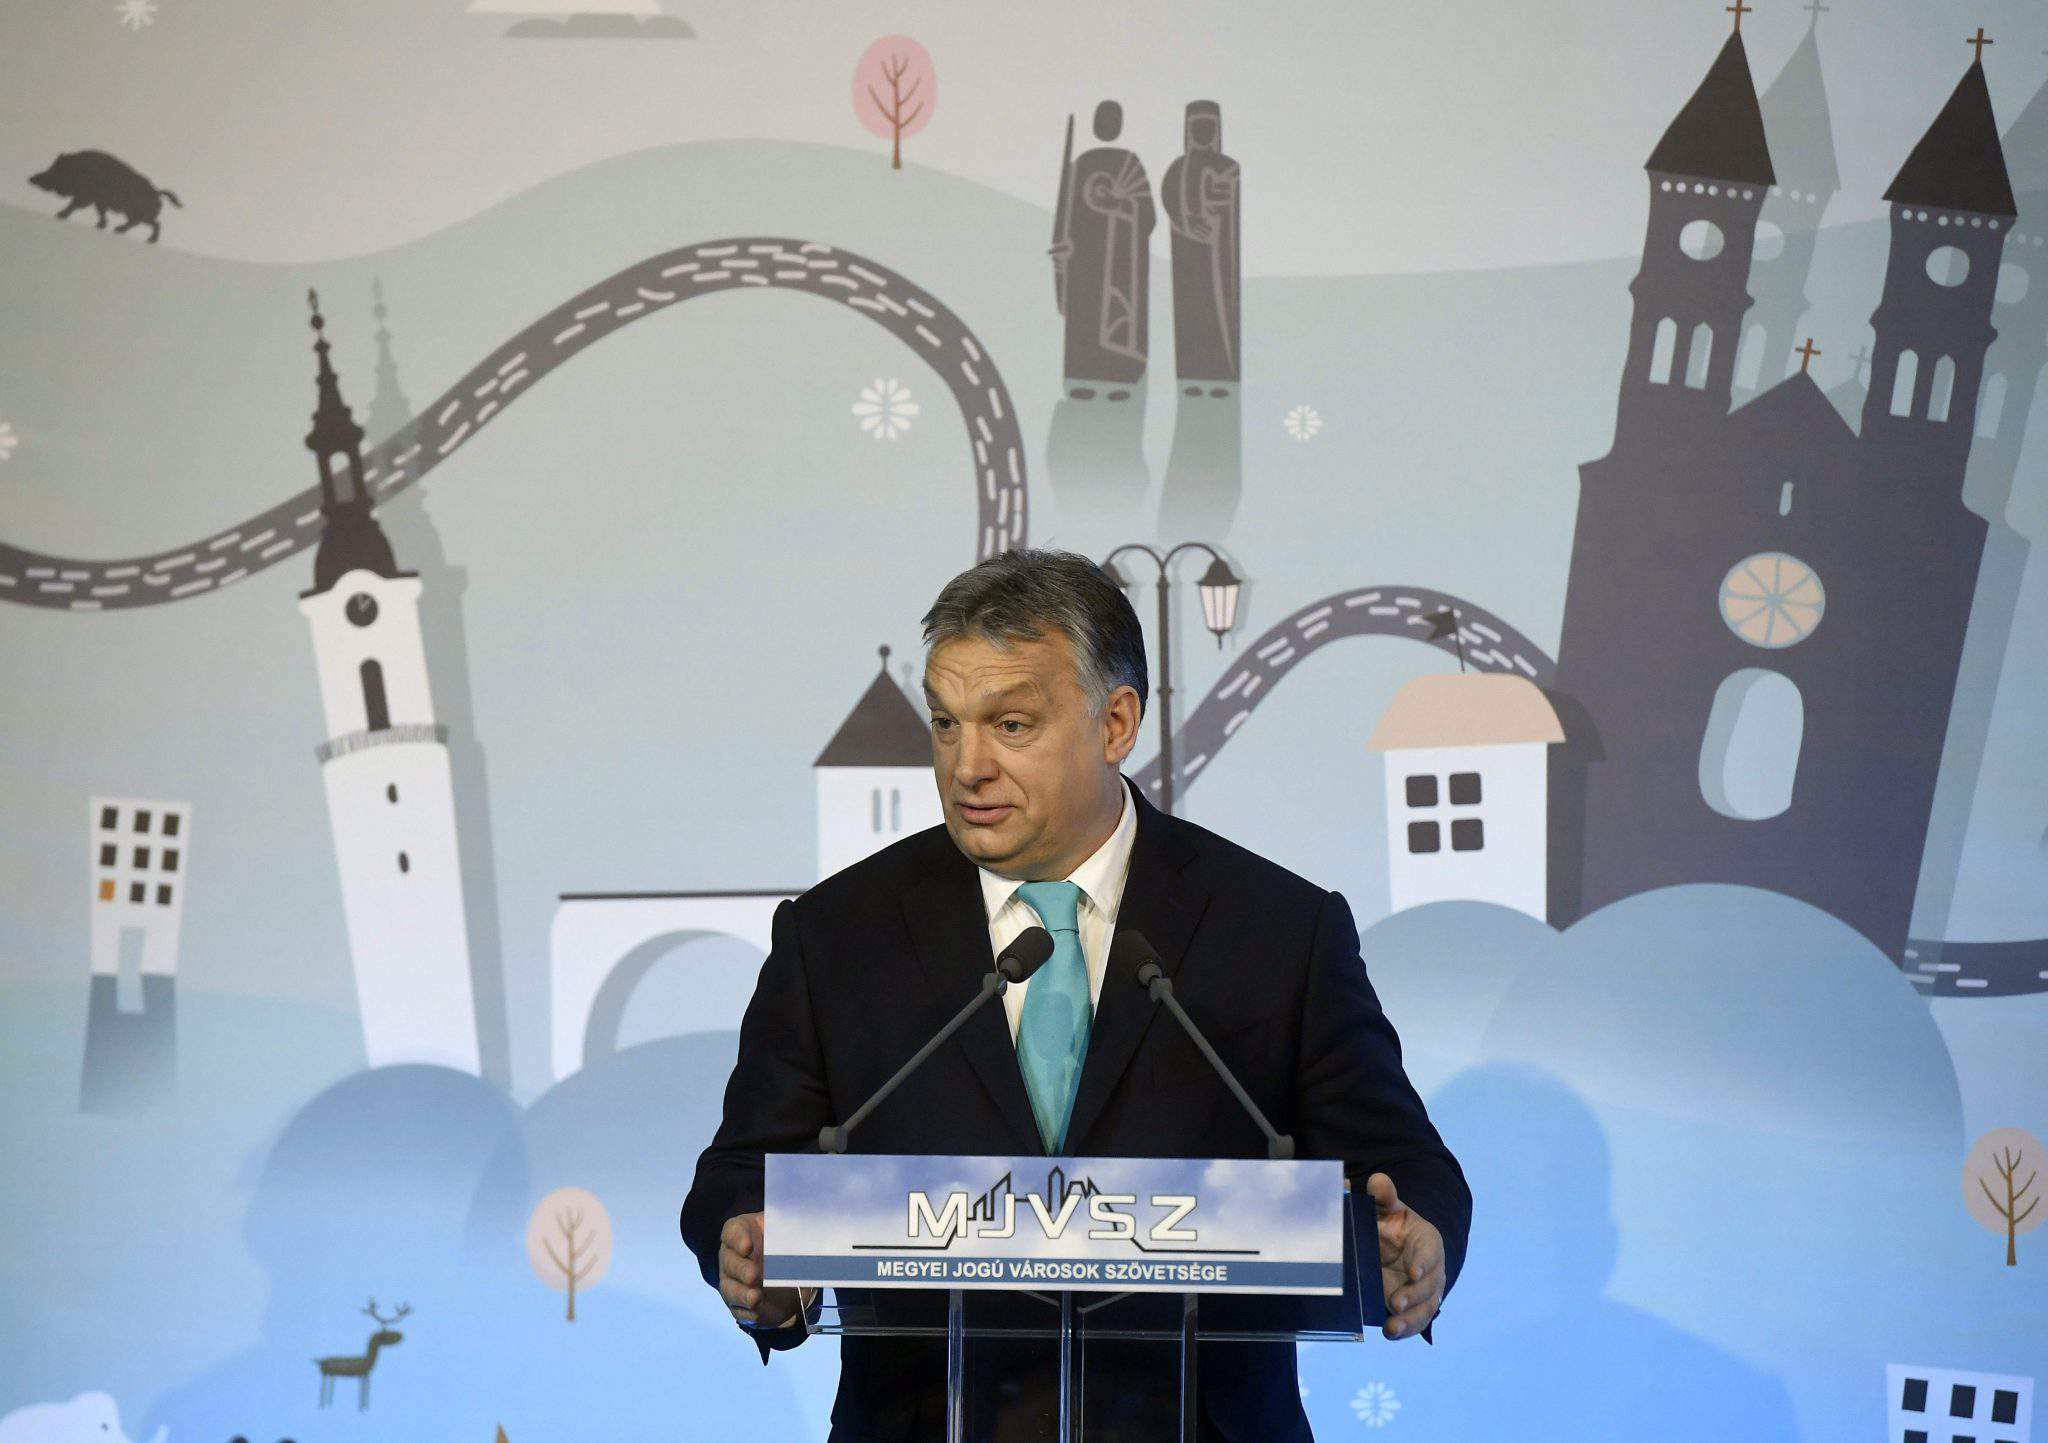 viktor orbán vorbesc Veszprém prim-ministru